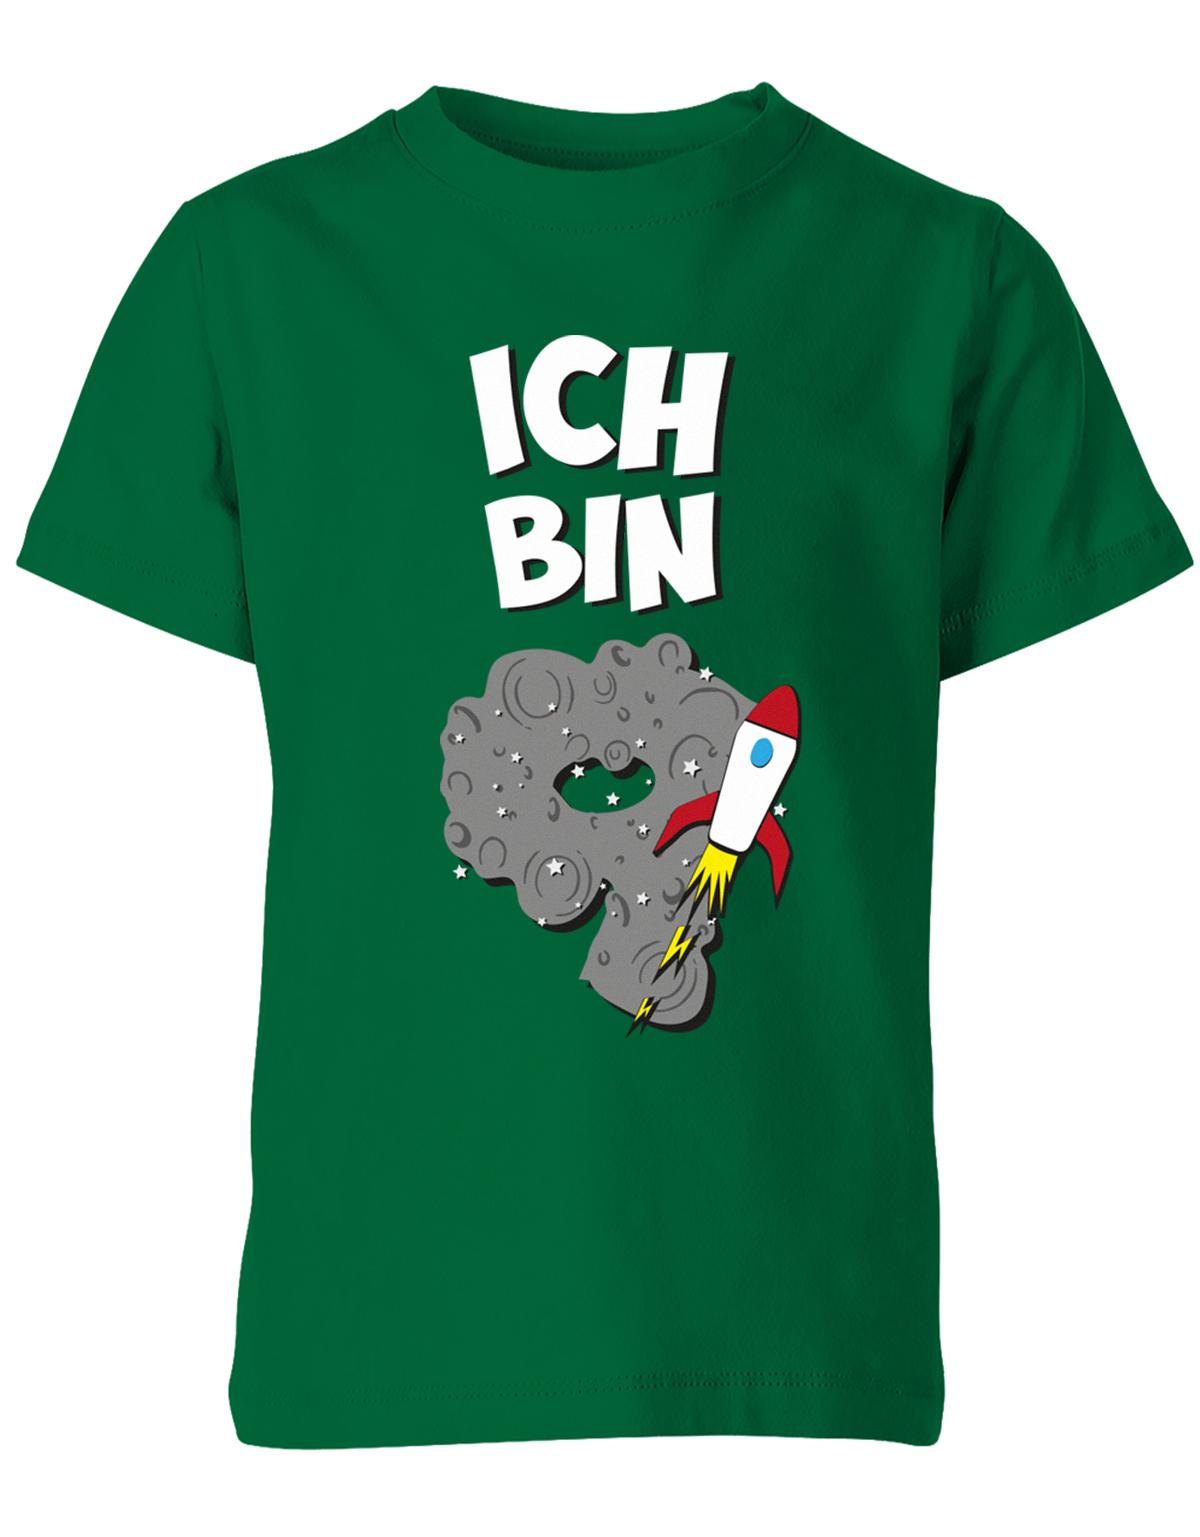 ich-bin-9-weltraum-rakete-planet-geburtstag-kinder-shirt-gruen